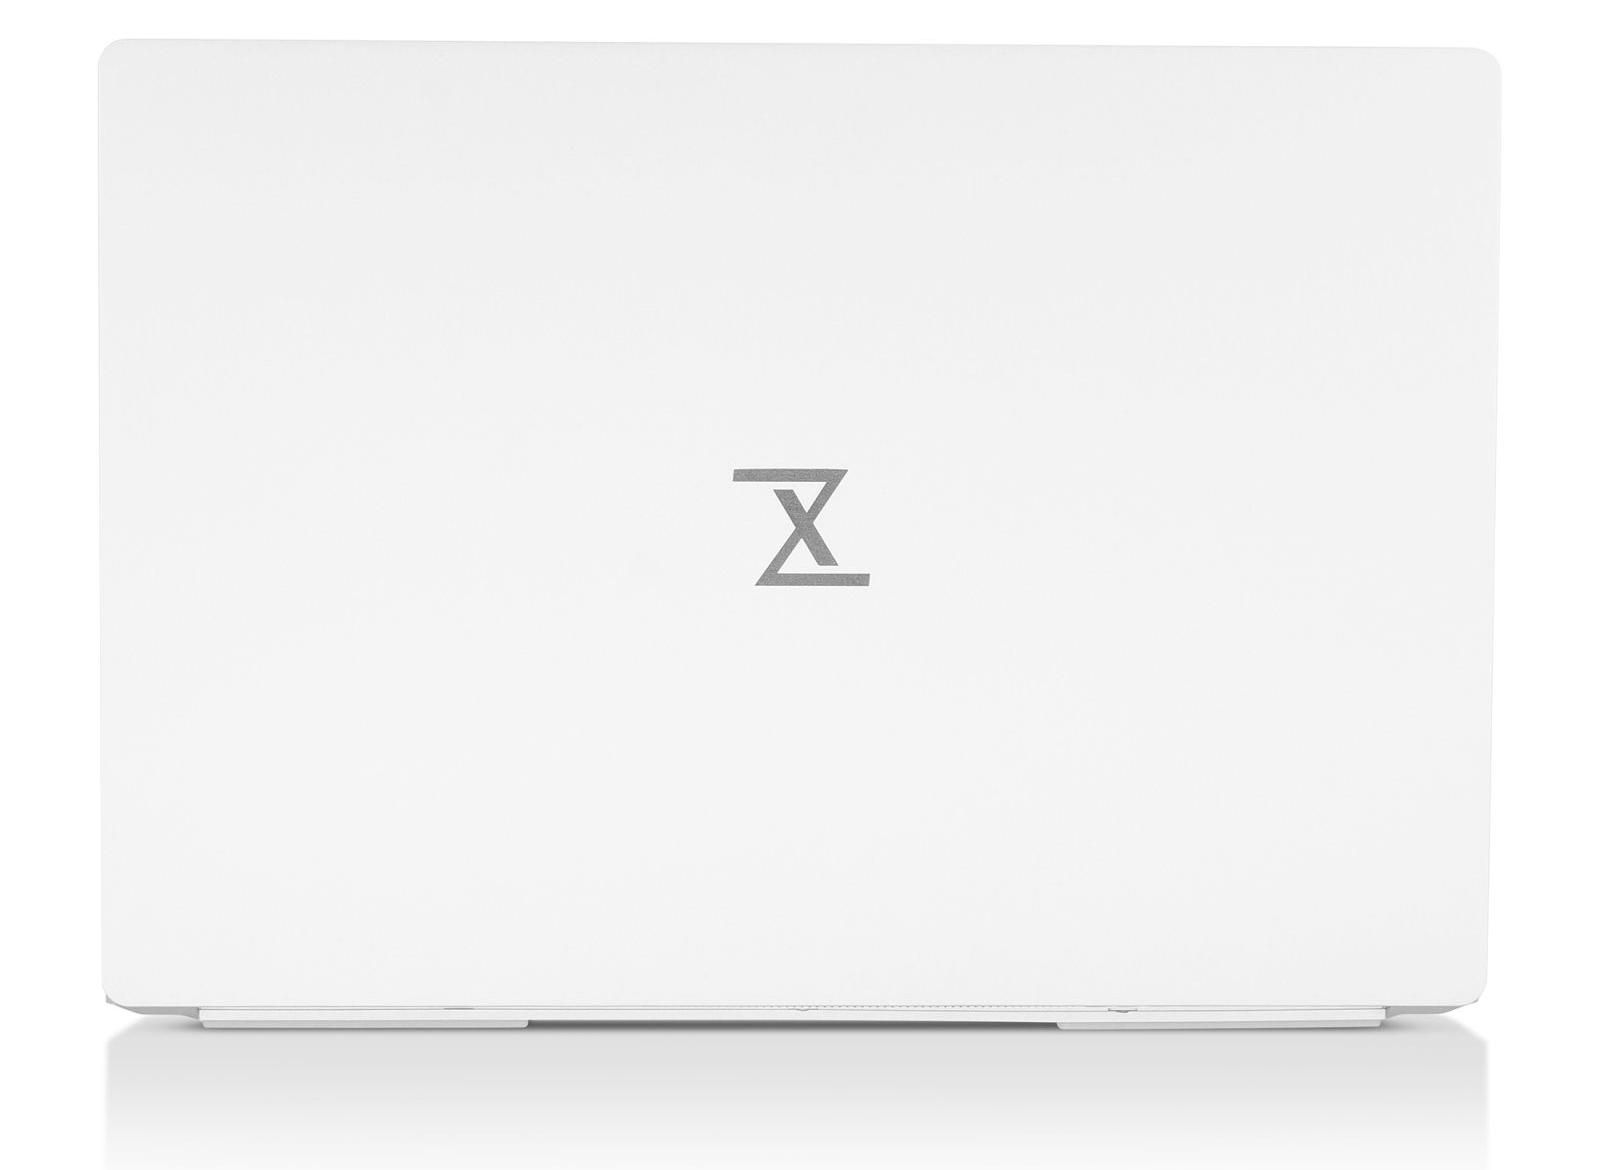 TUXEDO InfinityBook Pro 16 Gen7